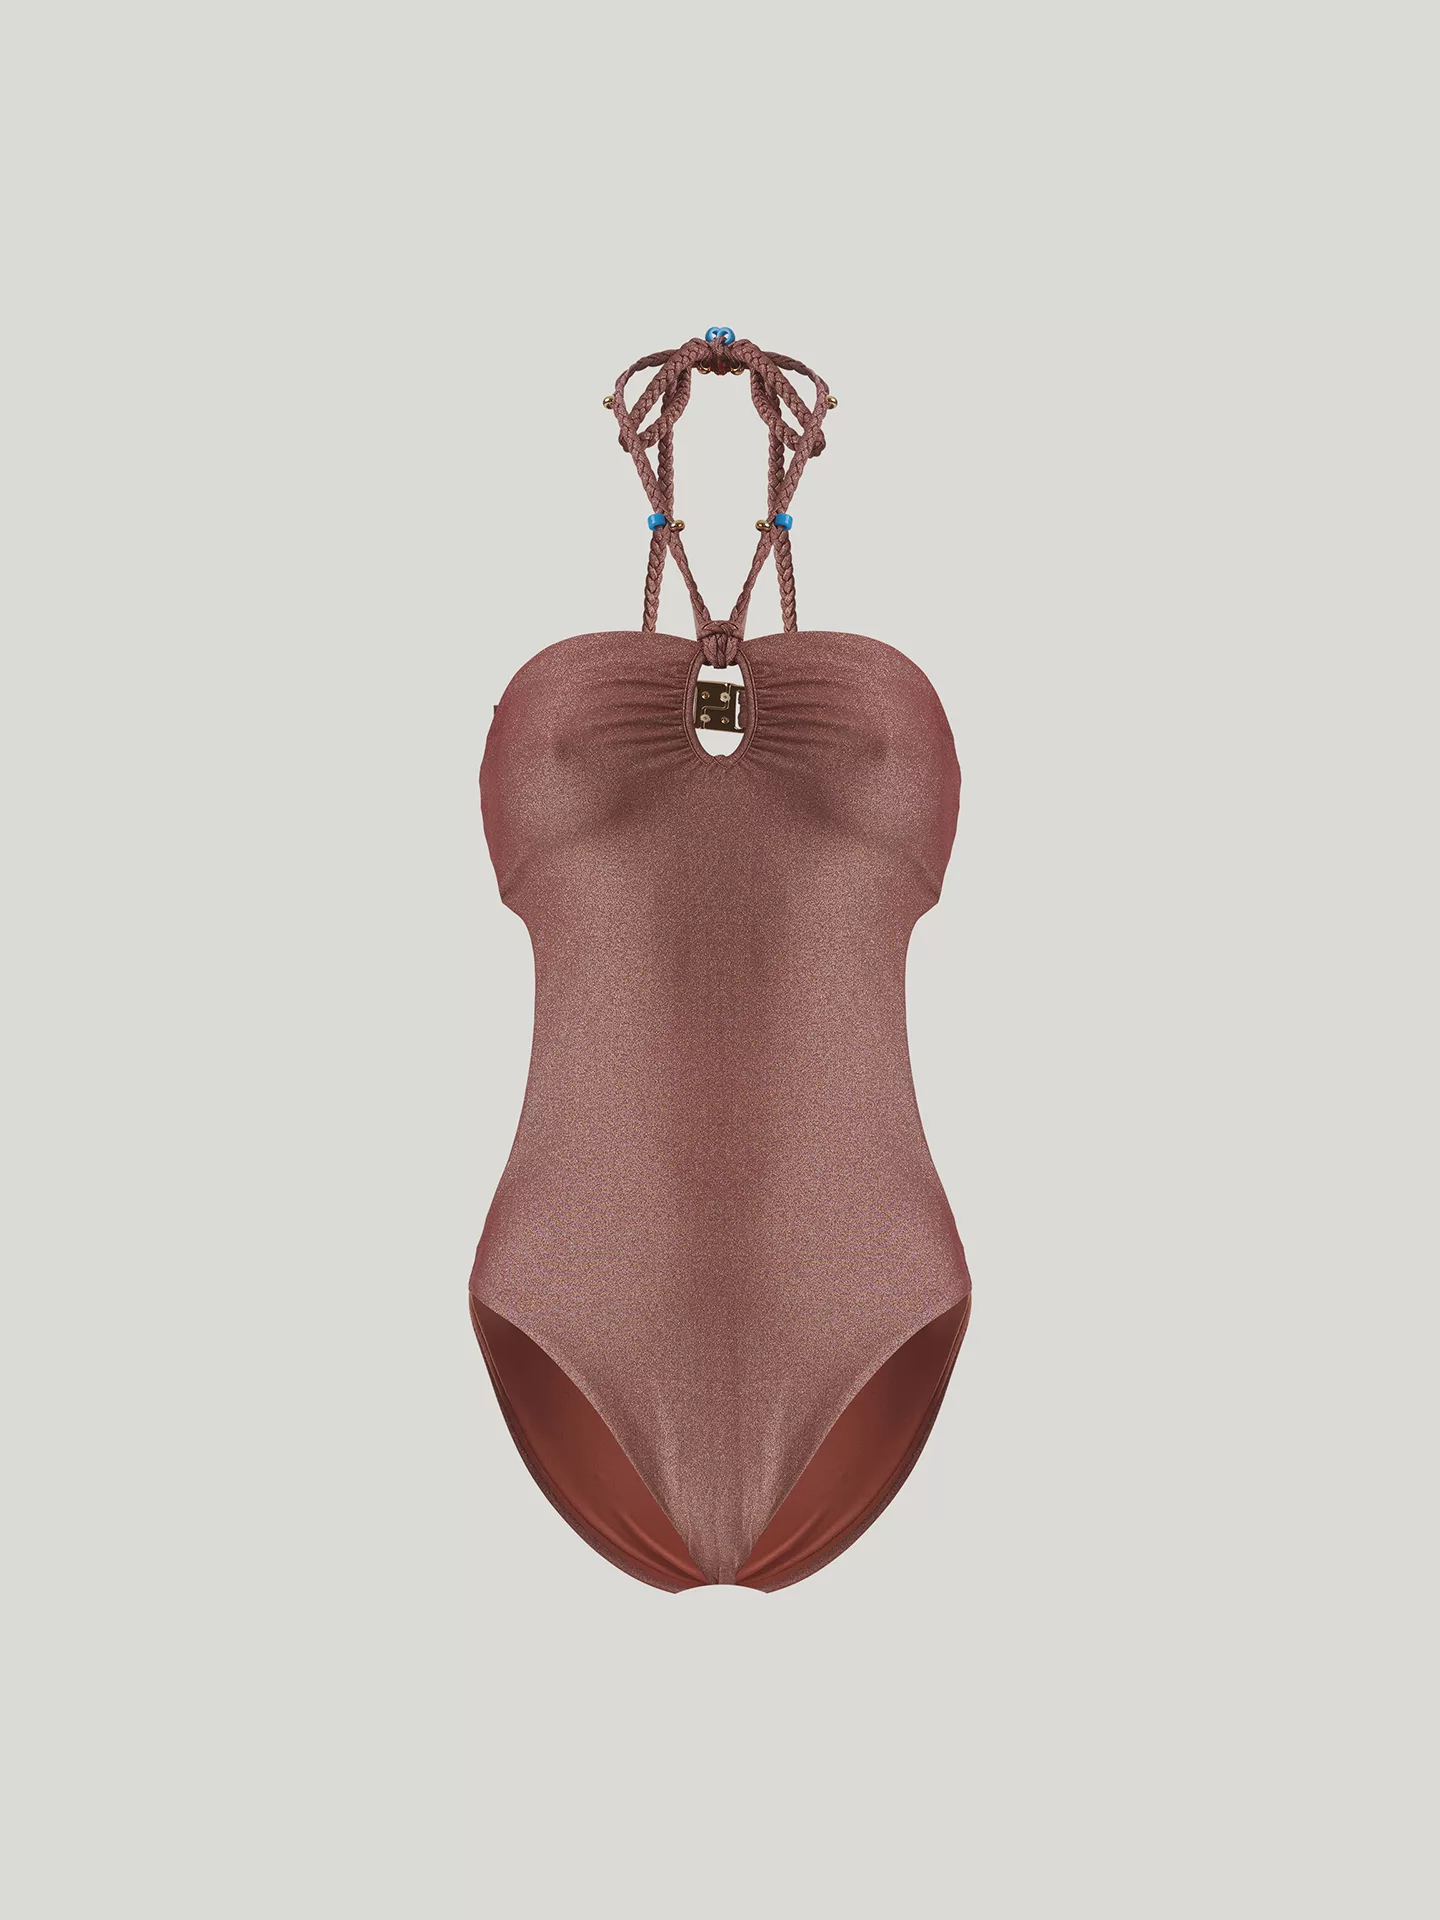 Wolford - High Shine Metallic Swimsuit, Frau, bronze metallic, Größe: XL günstig online kaufen